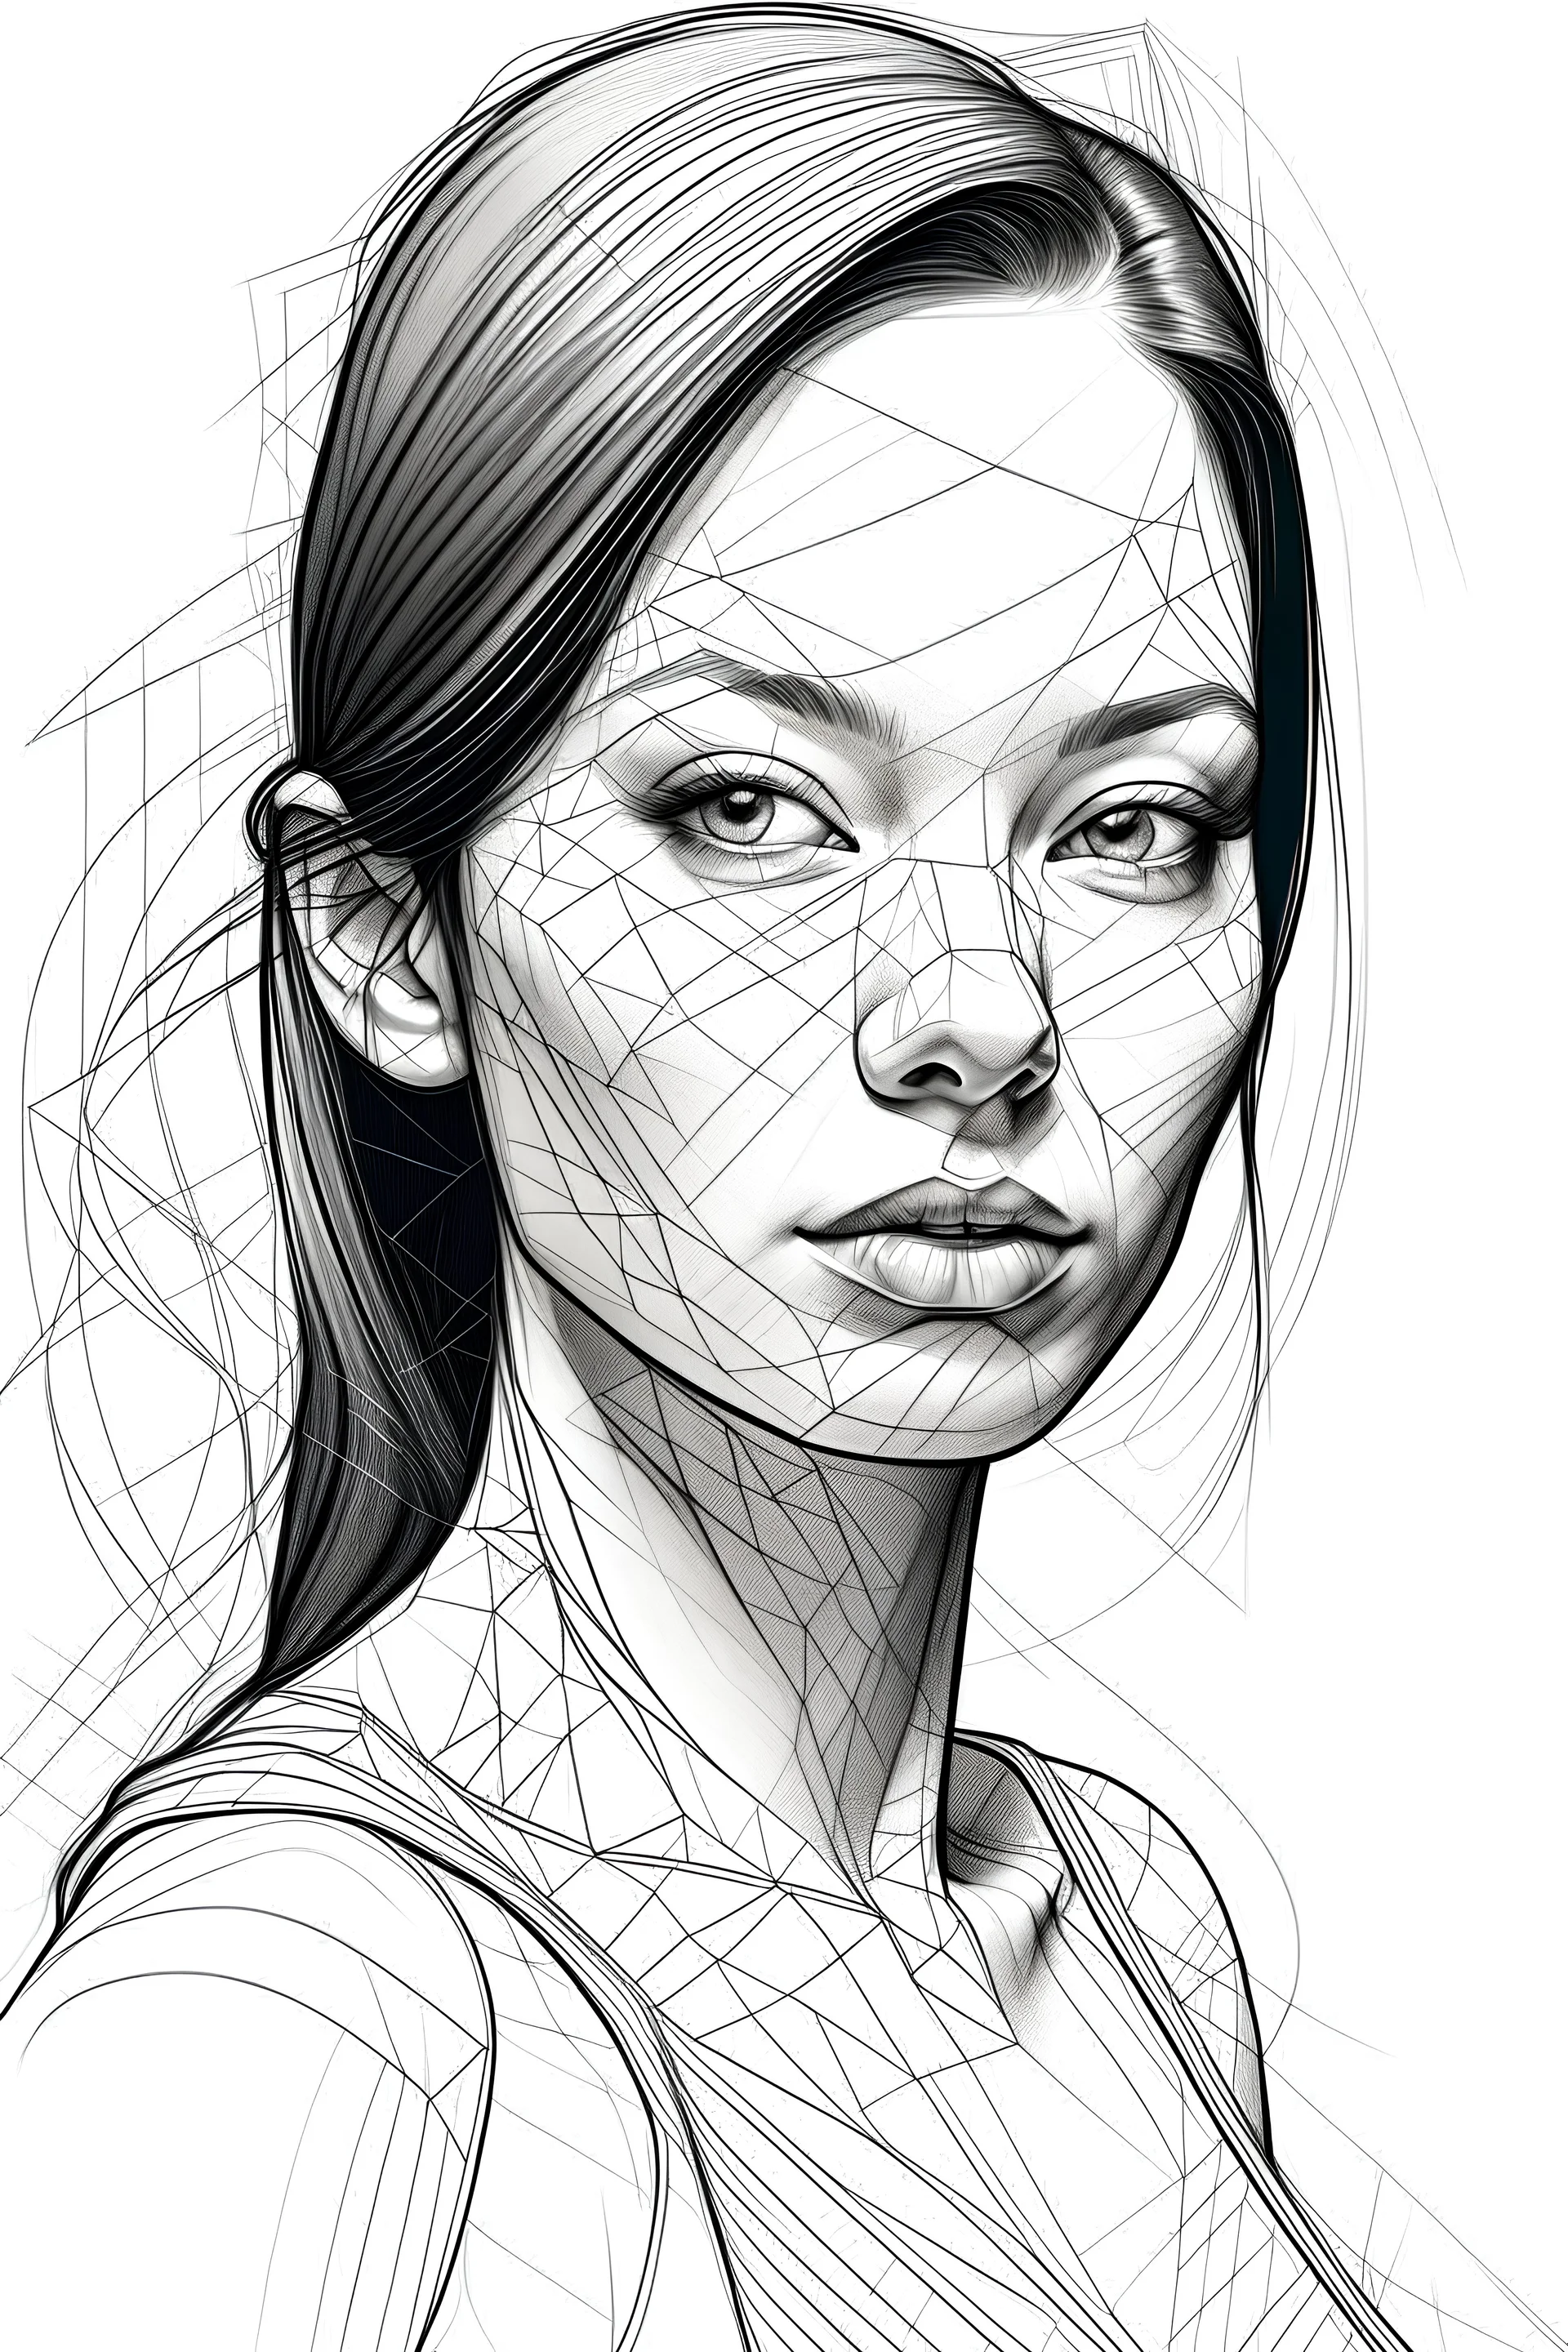 A female body portrait to draw